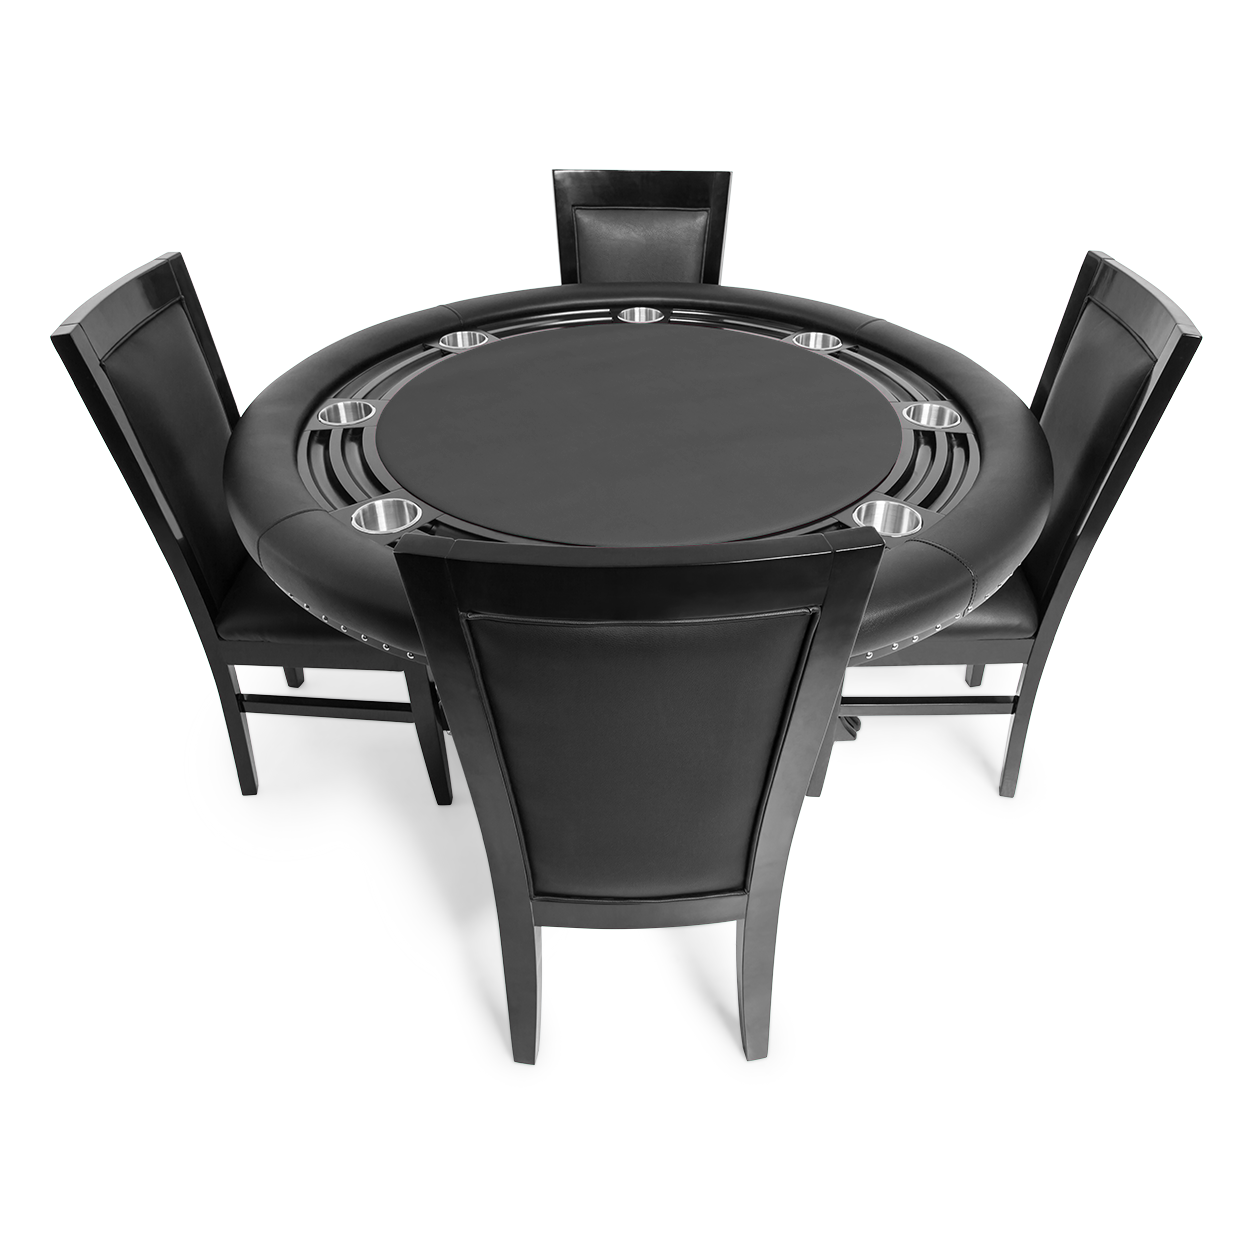 BBO The Nighthawk Poker Table Black Leg Velveteen Black And BBO Chair